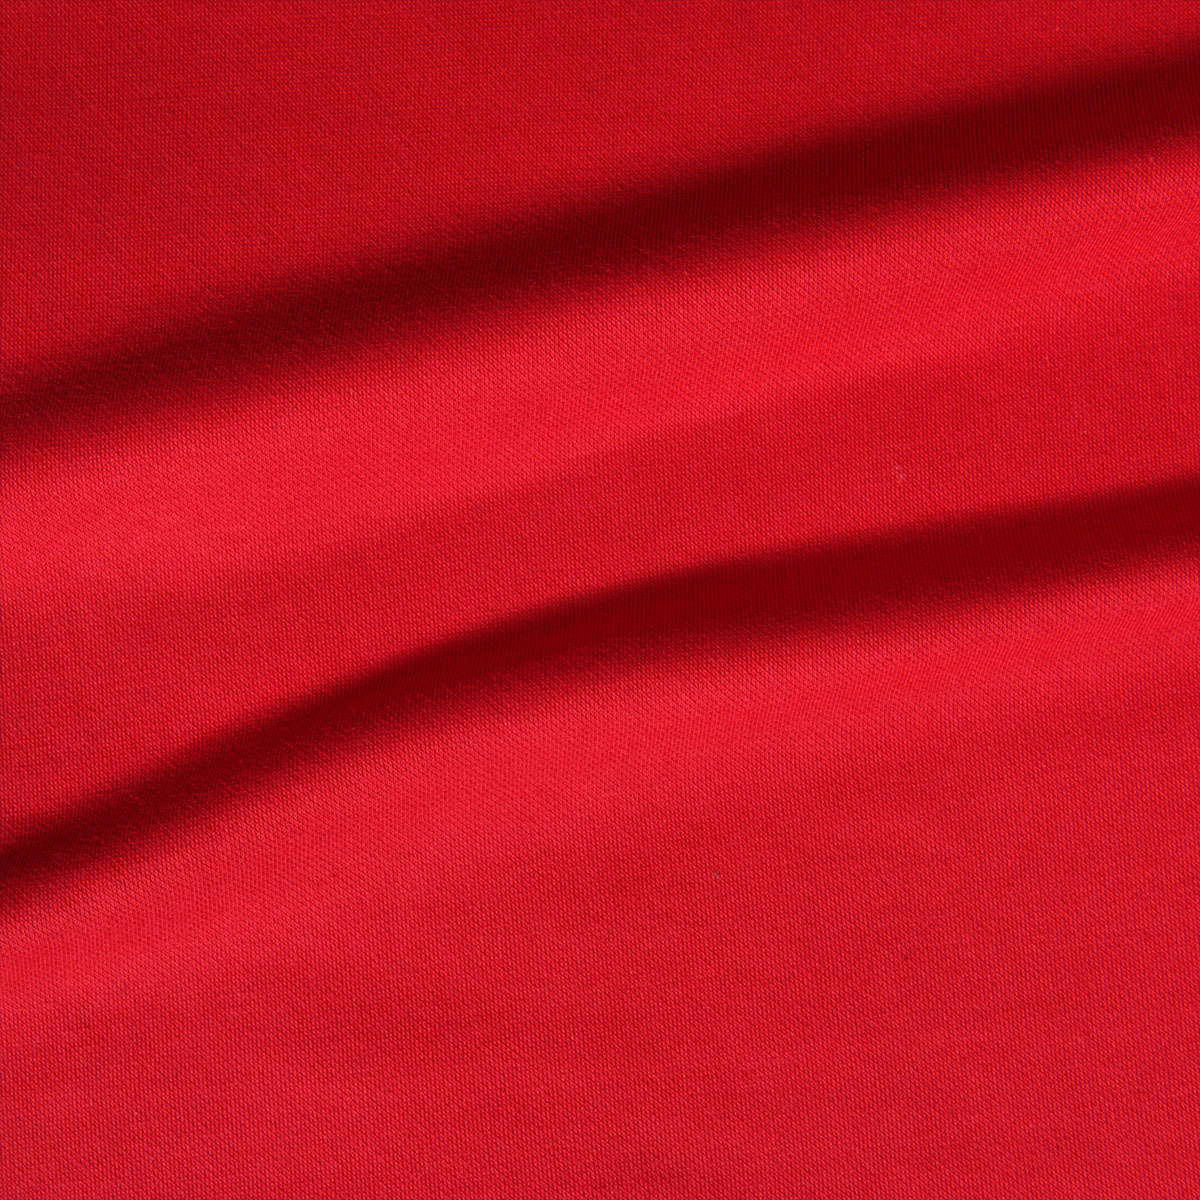 Dekostoff Polo Uni rot in 1,6m Breite (METERWARE) Baumwollstoff Stoff aus 100% Baumwolle